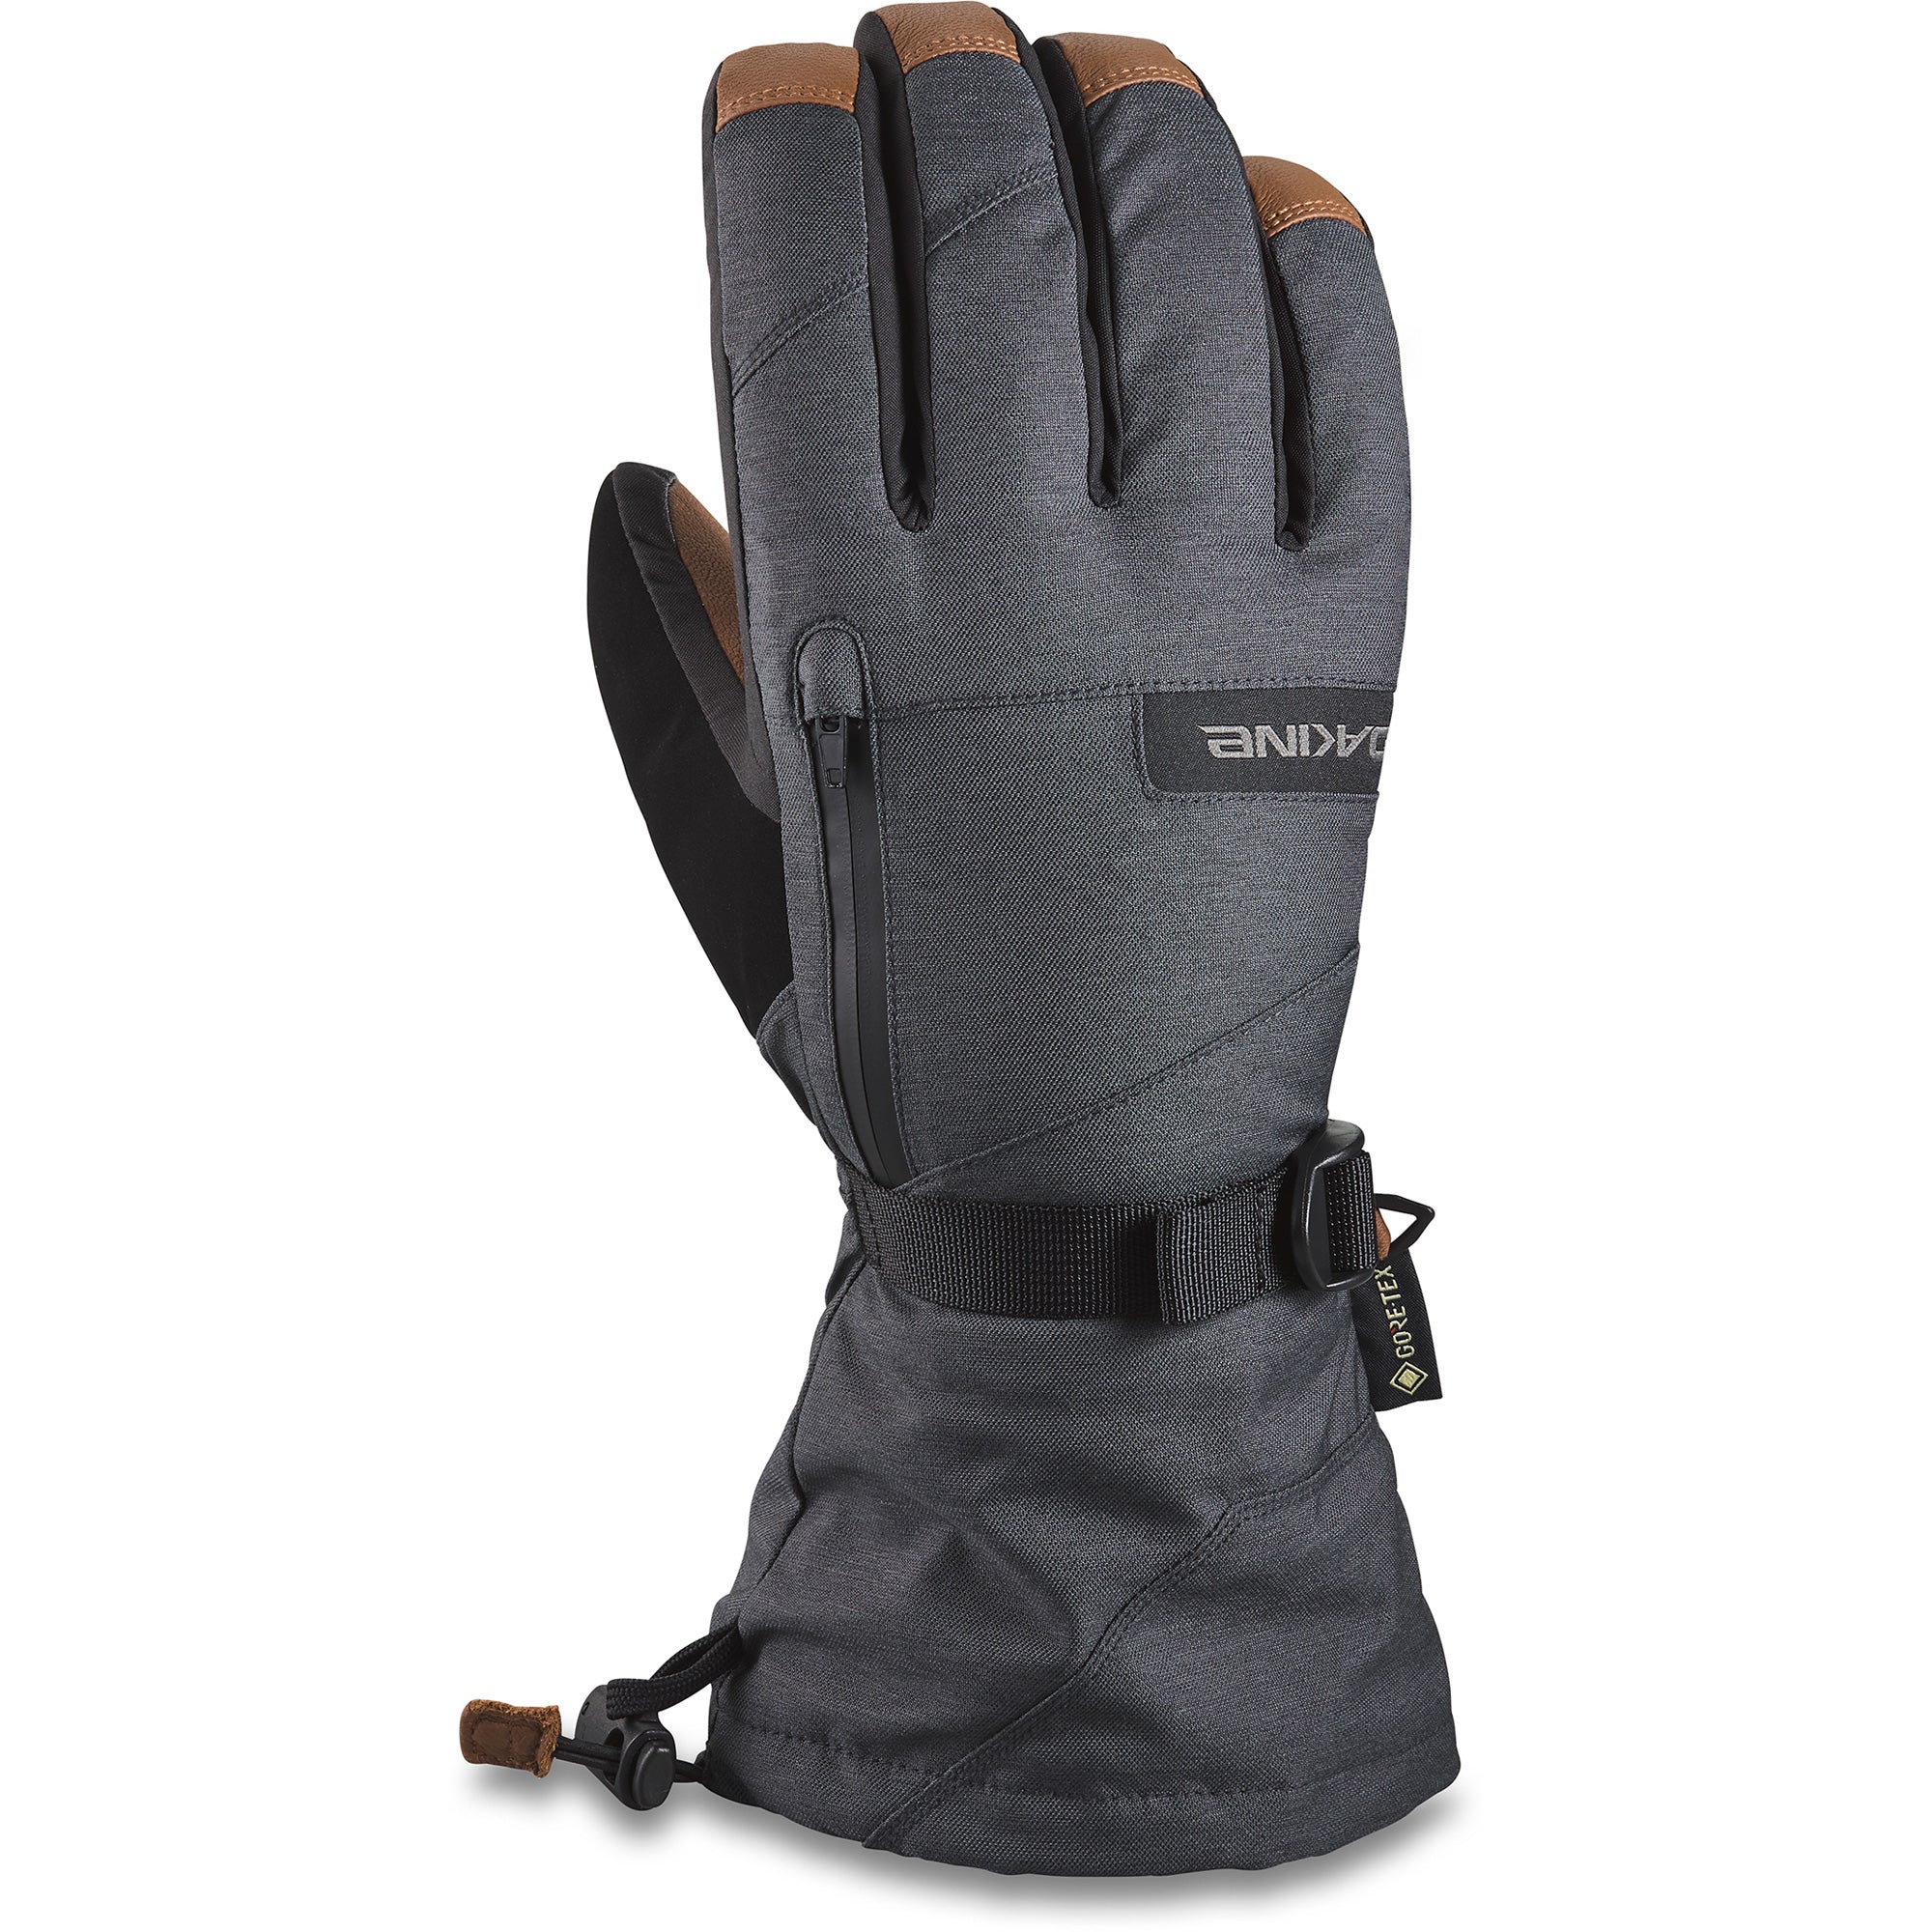 Unlock Wilderness' choice in the Dakine Vs North Face comparison, the Leather Titan Gore-tex Glove by Dakine